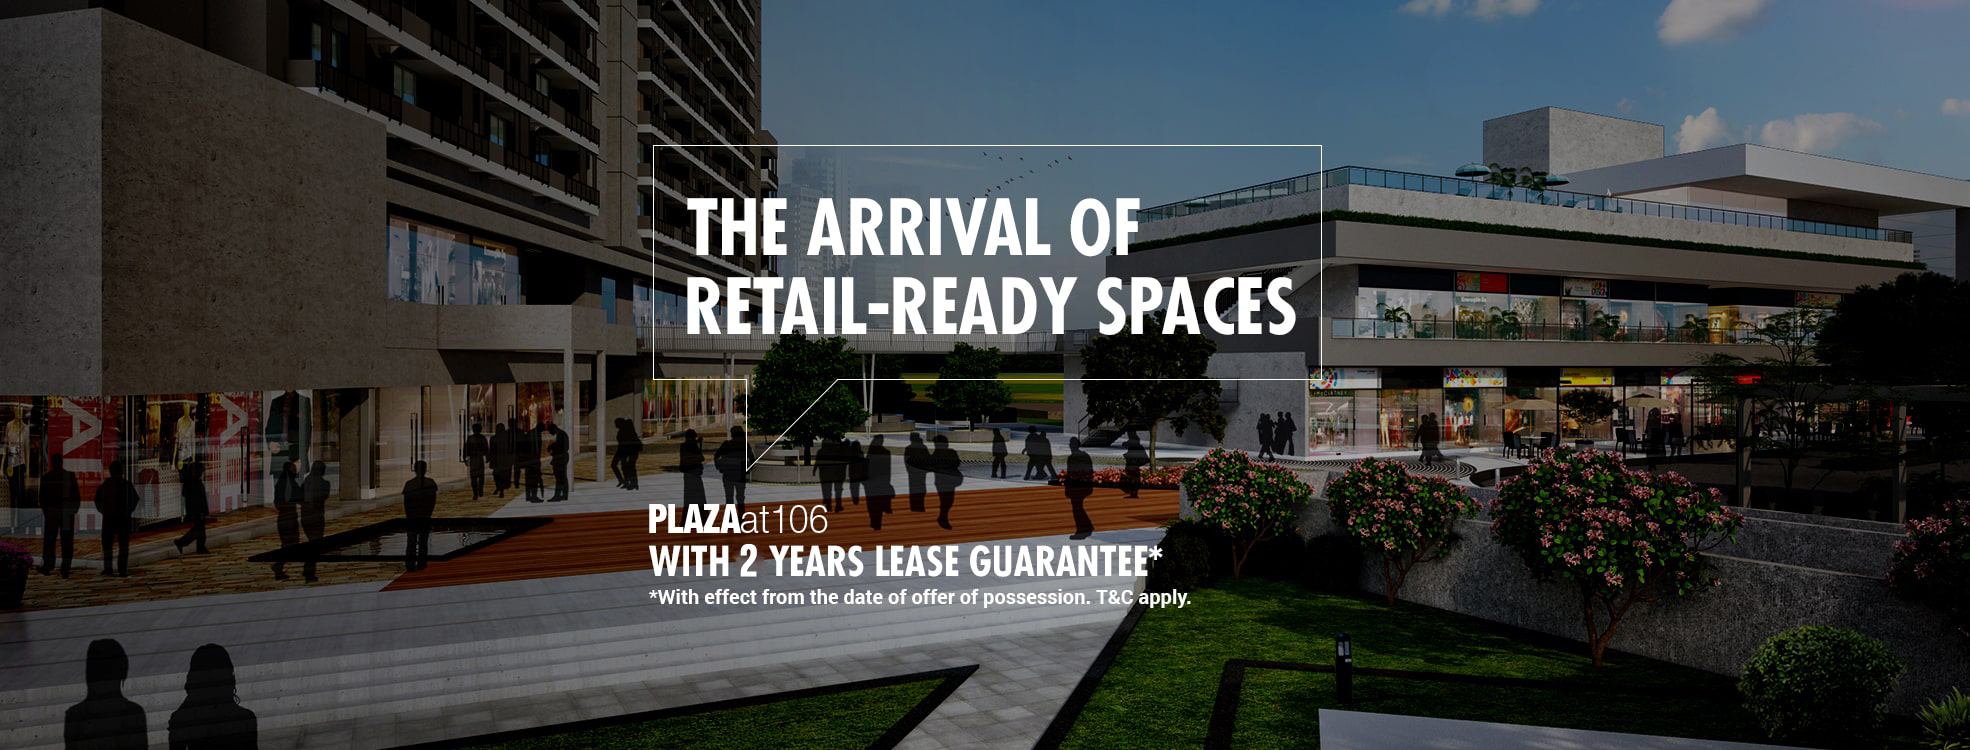 Retail-Ready Spaces